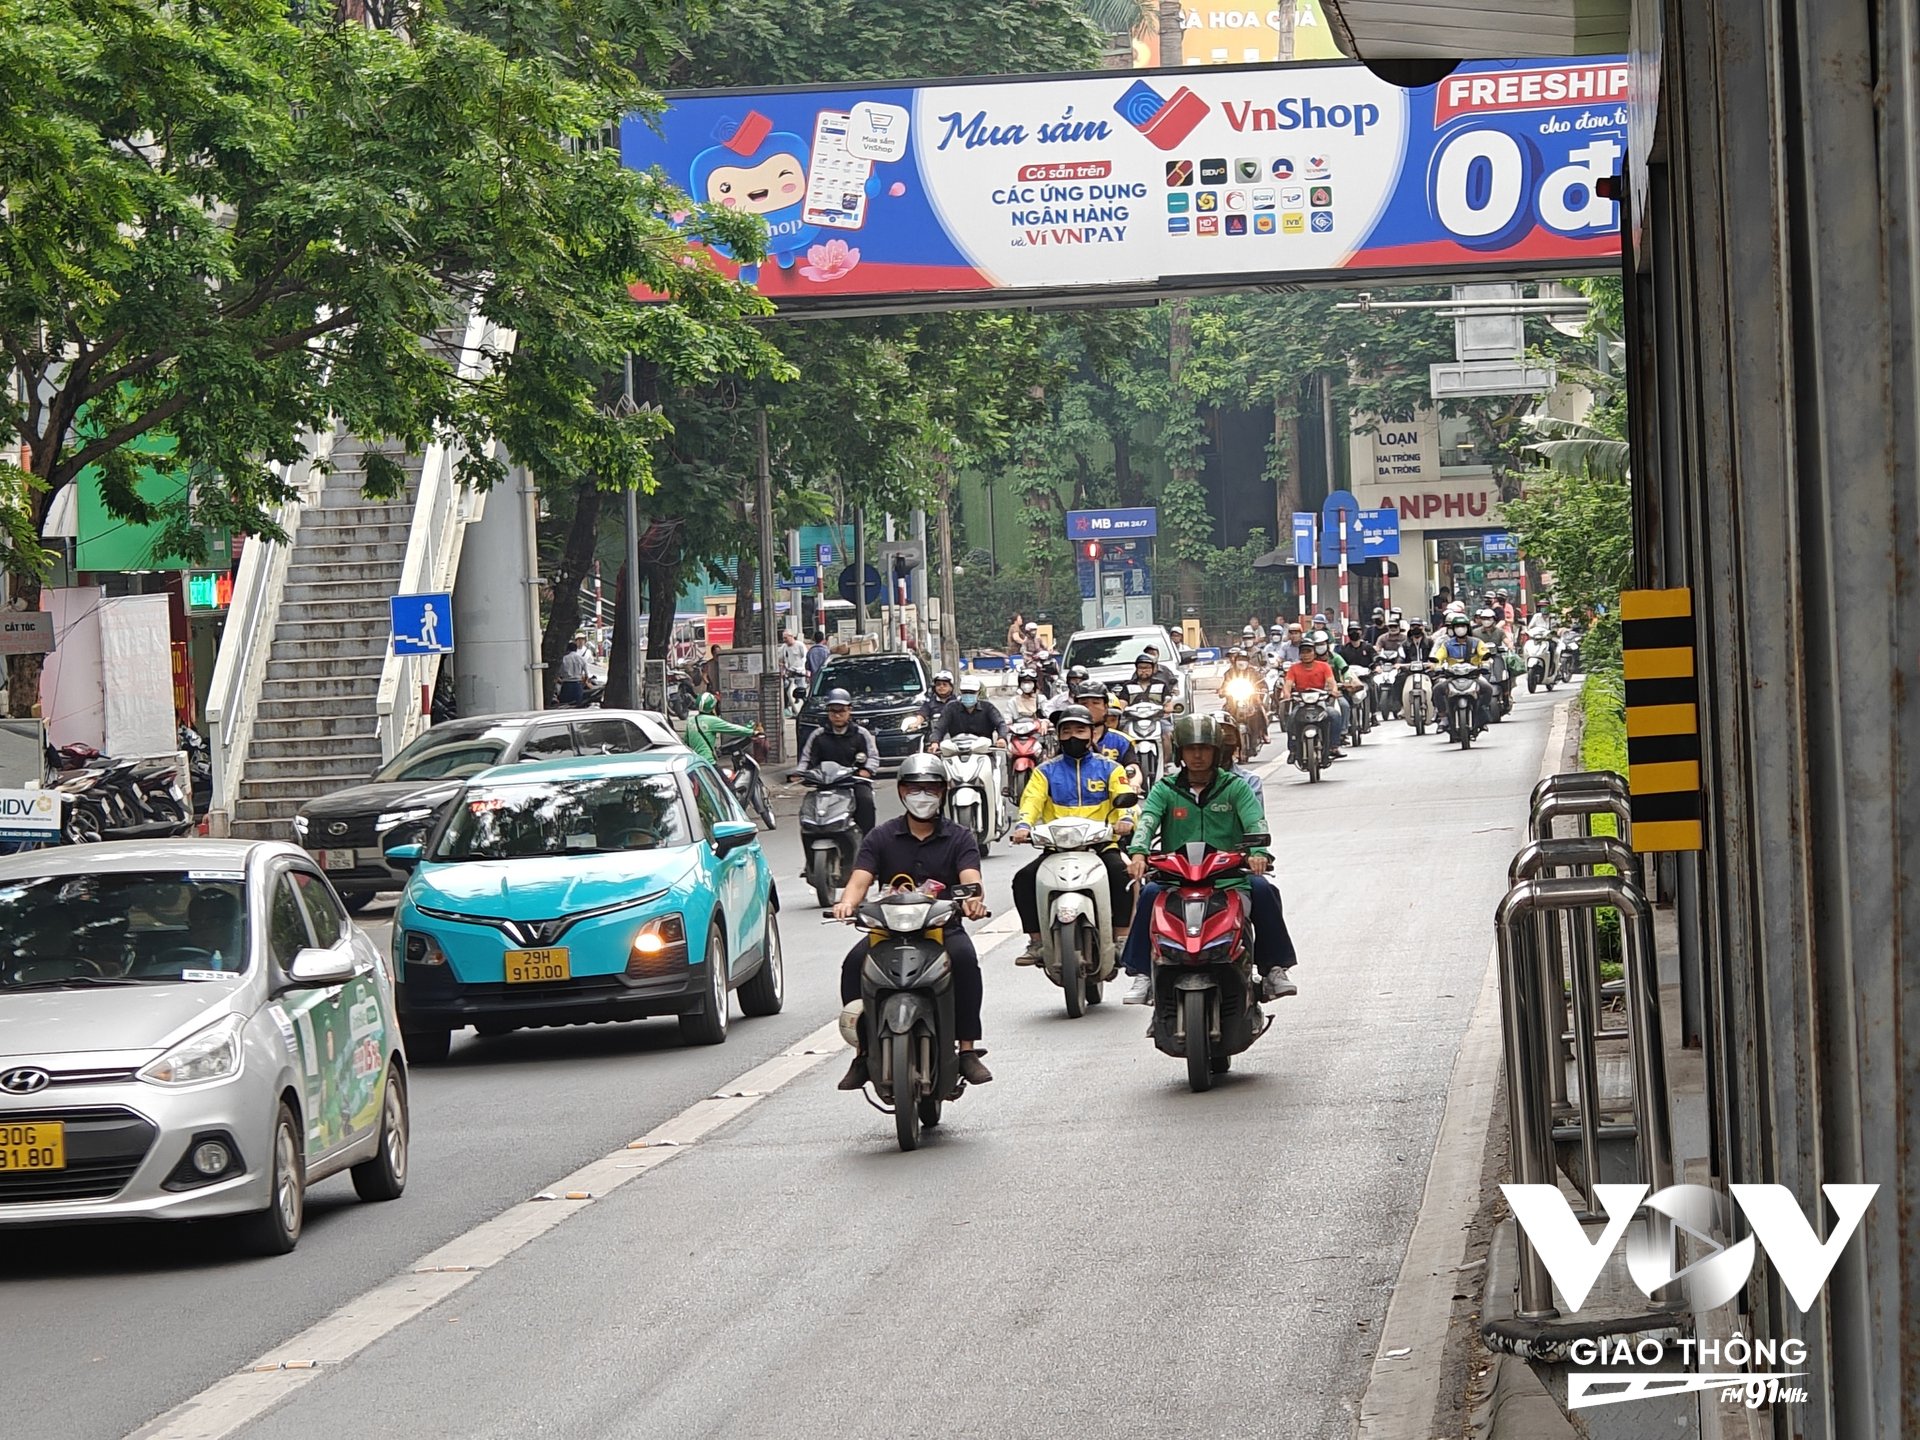 Tỉ lệ xe ôm công nghệ vi phạm luật giao thông đường bộ vẫn còn khá phổ biến trên đường phố Thủ đô Hà Nội